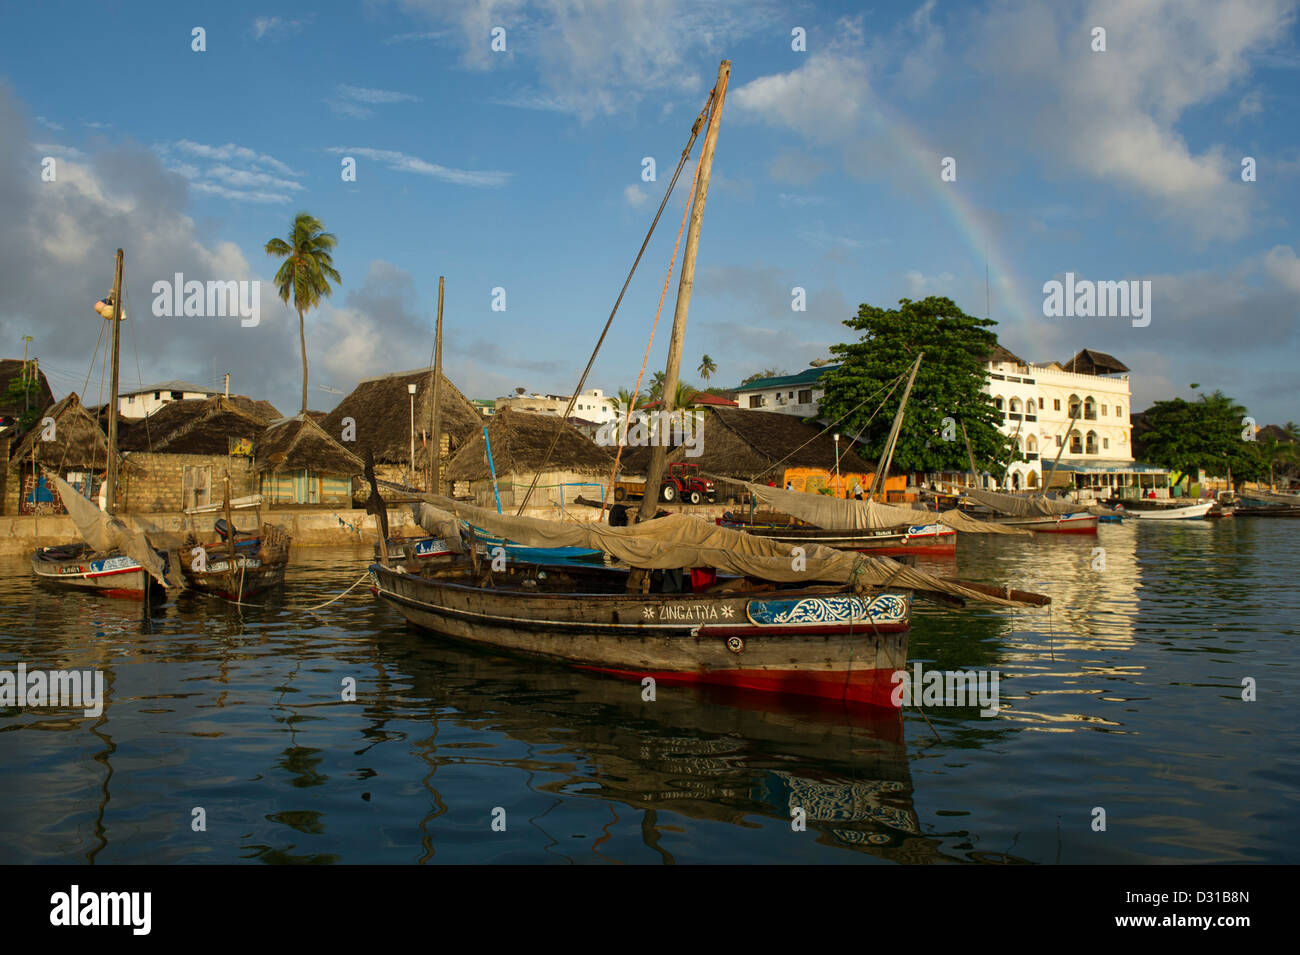 La ligne de front de boutres de la ville de Lamu, l'archipel de Lamu, Kenya Banque D'Images